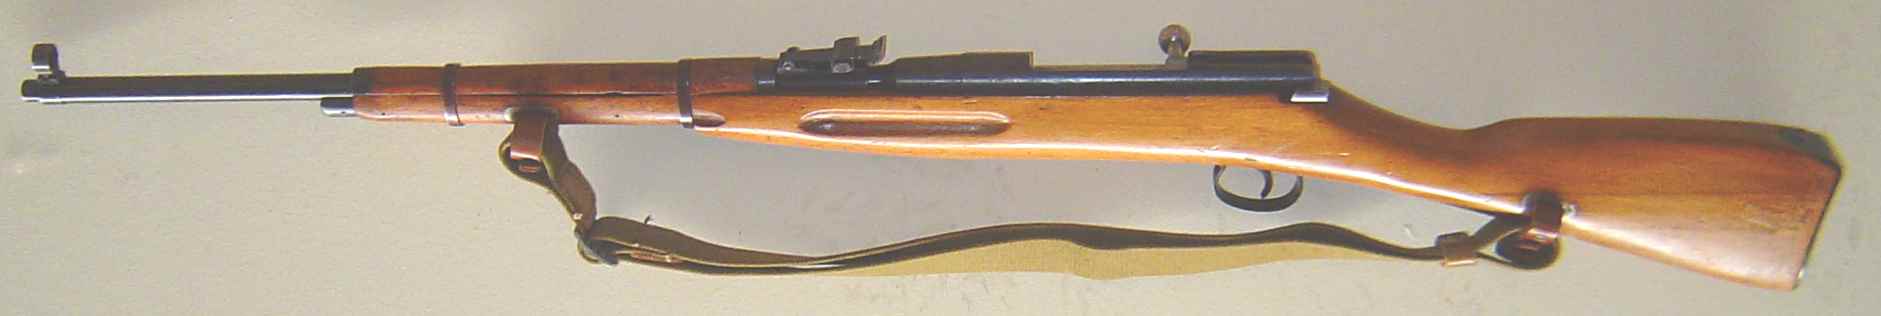 Mosin Nagant en calibre 22 LR